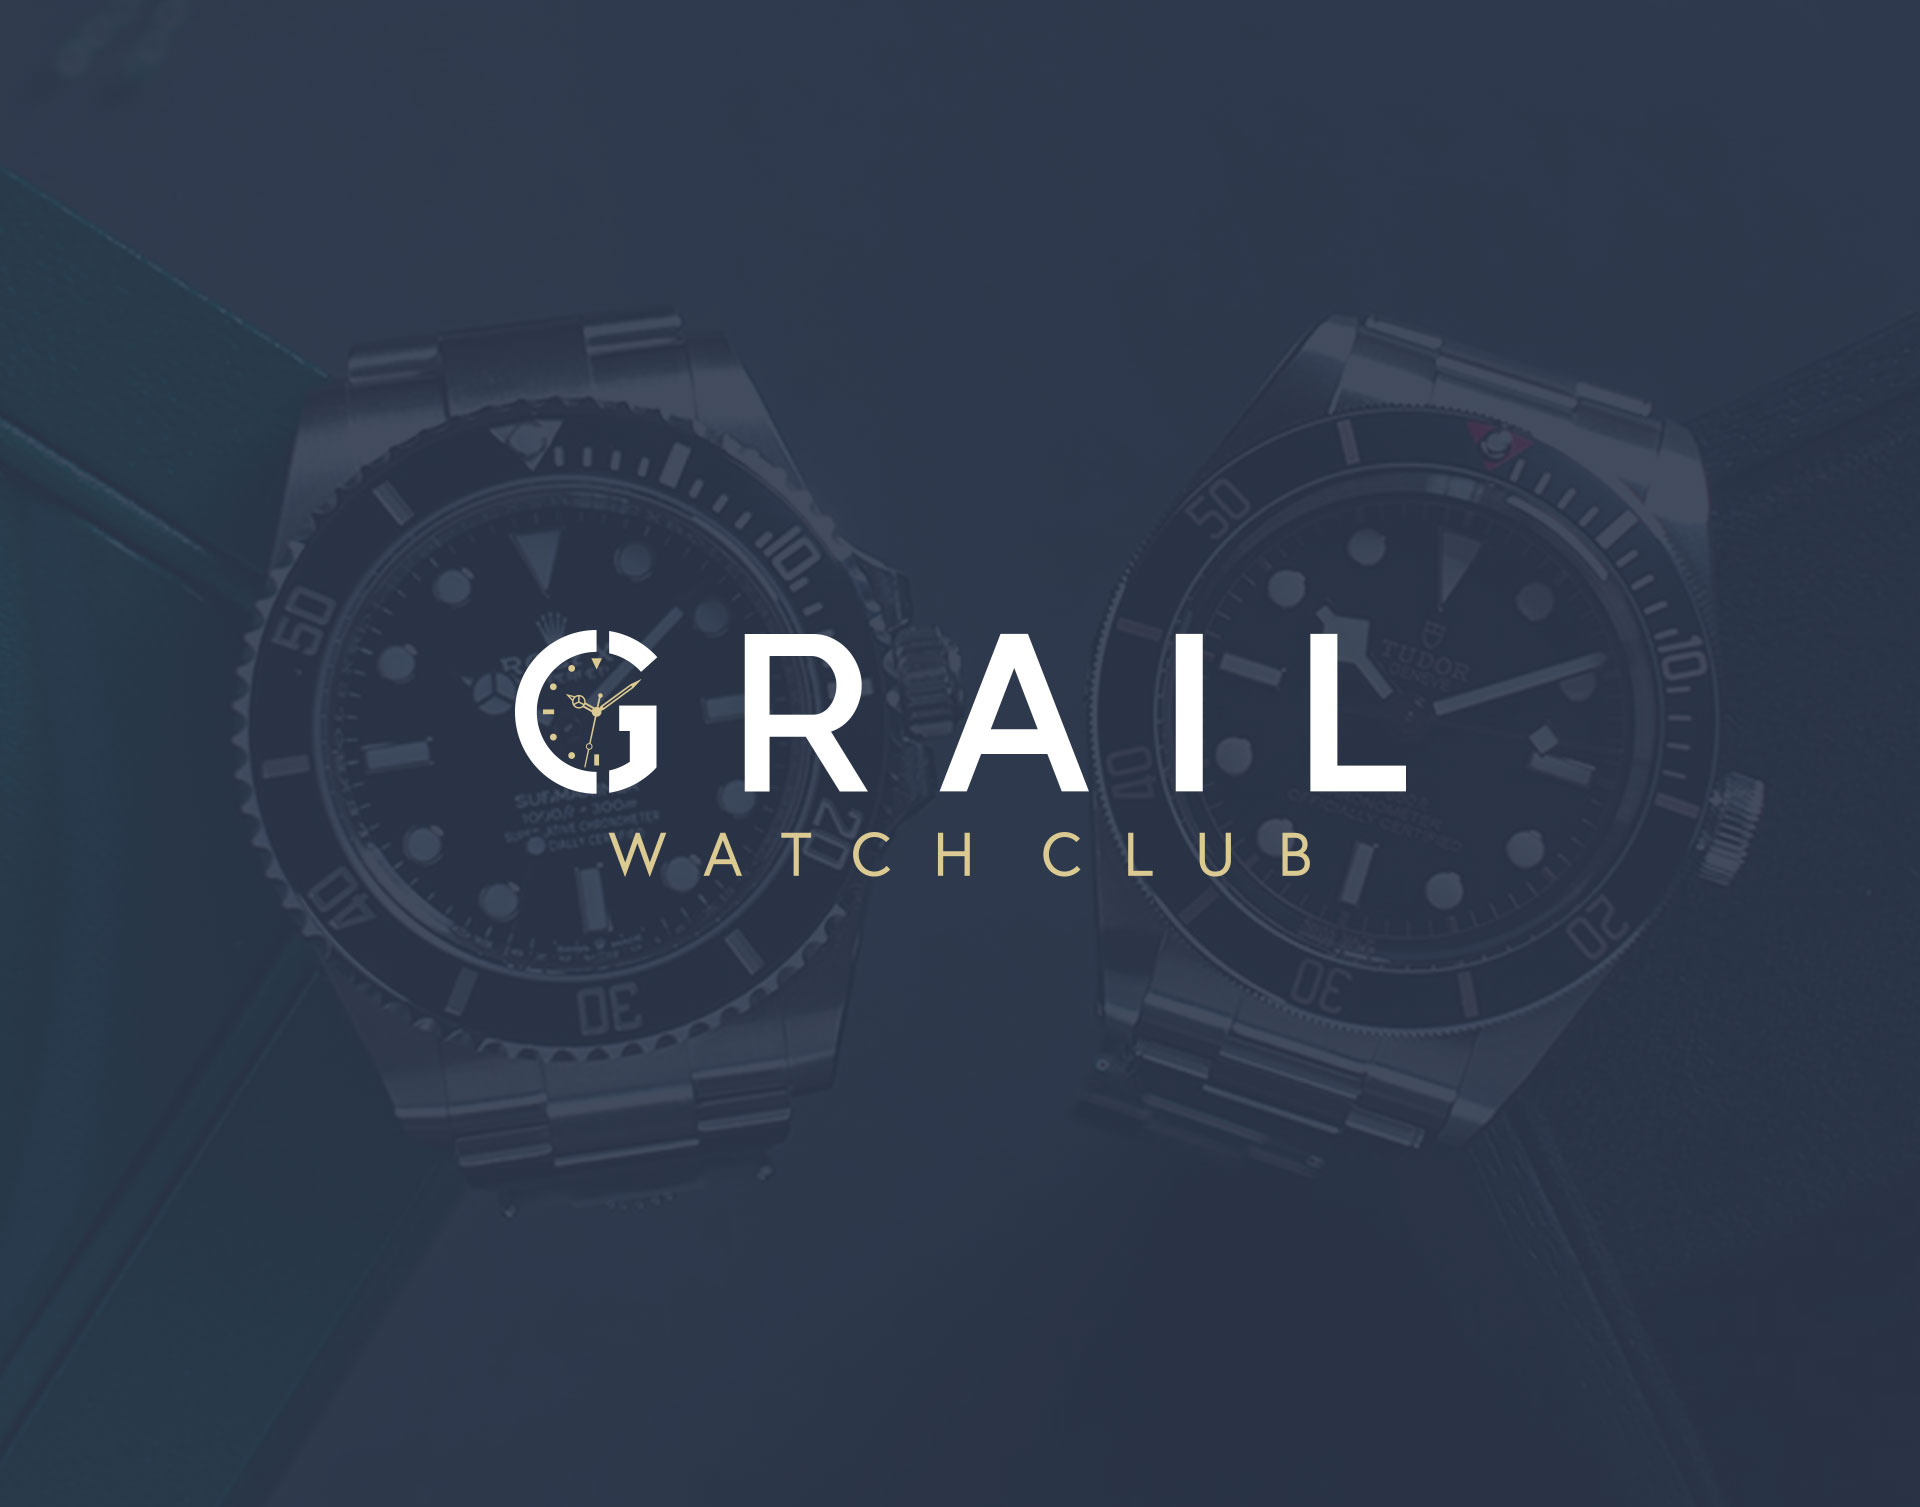 Grail Watch Club